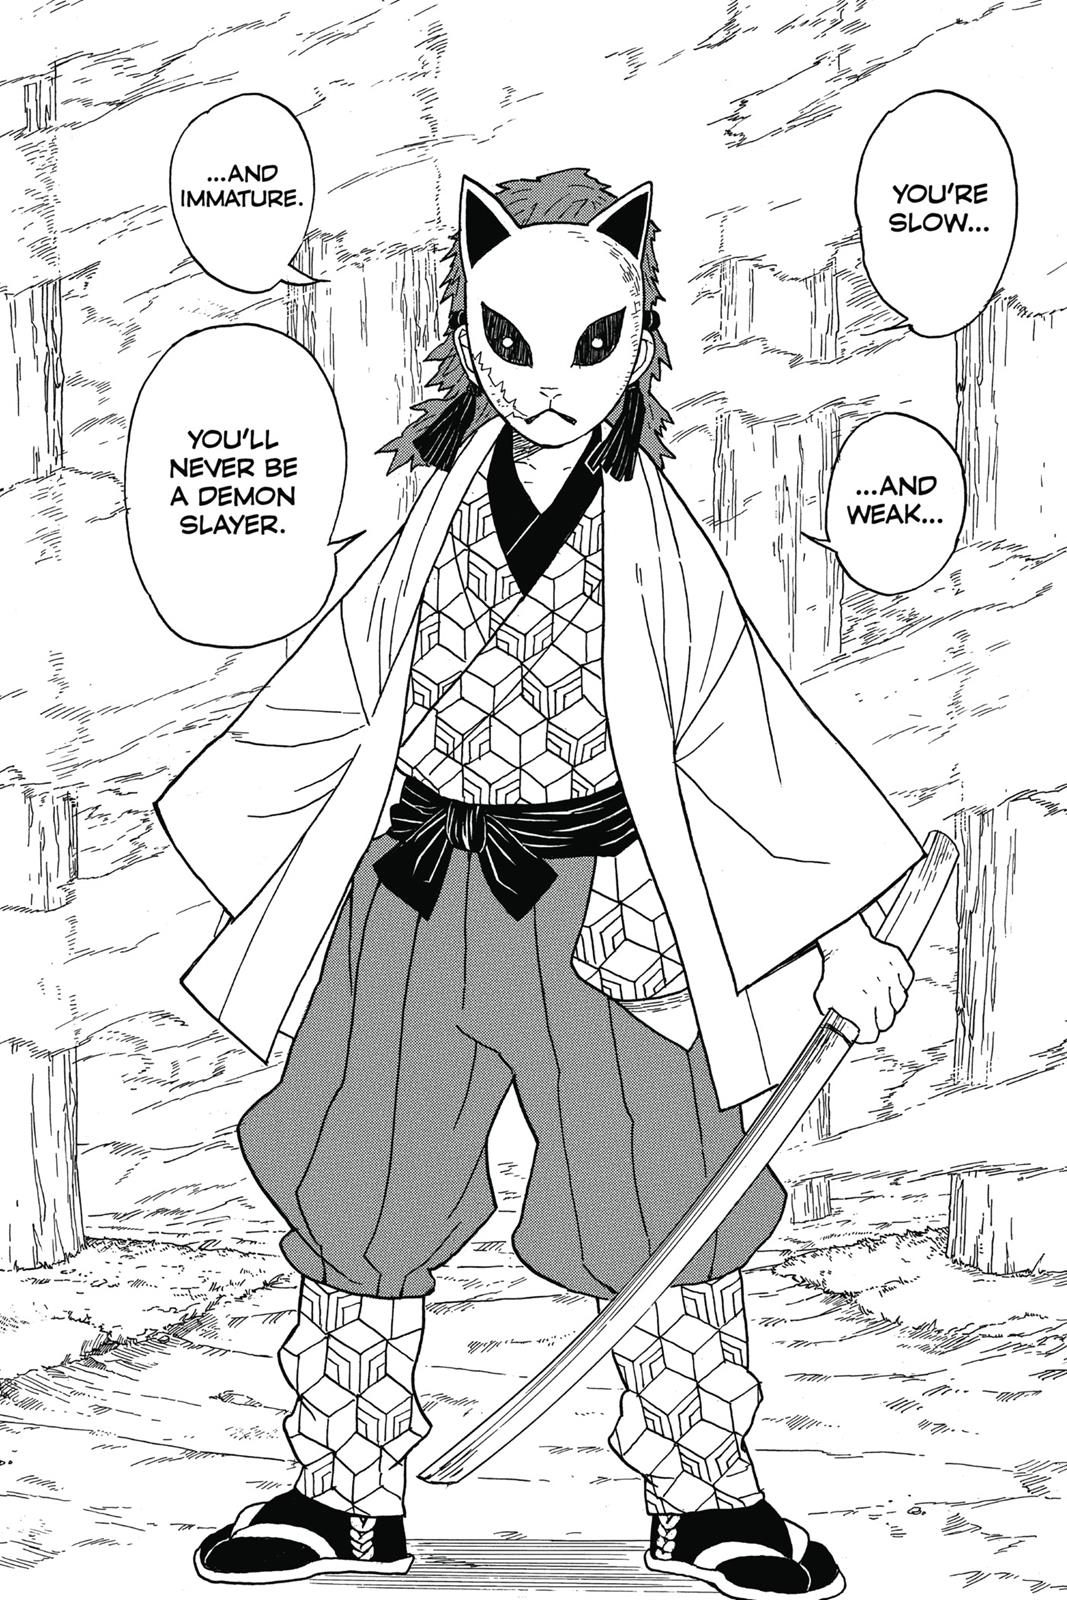 Demon Slayer Manga Manga Chapter - 4 - image 14